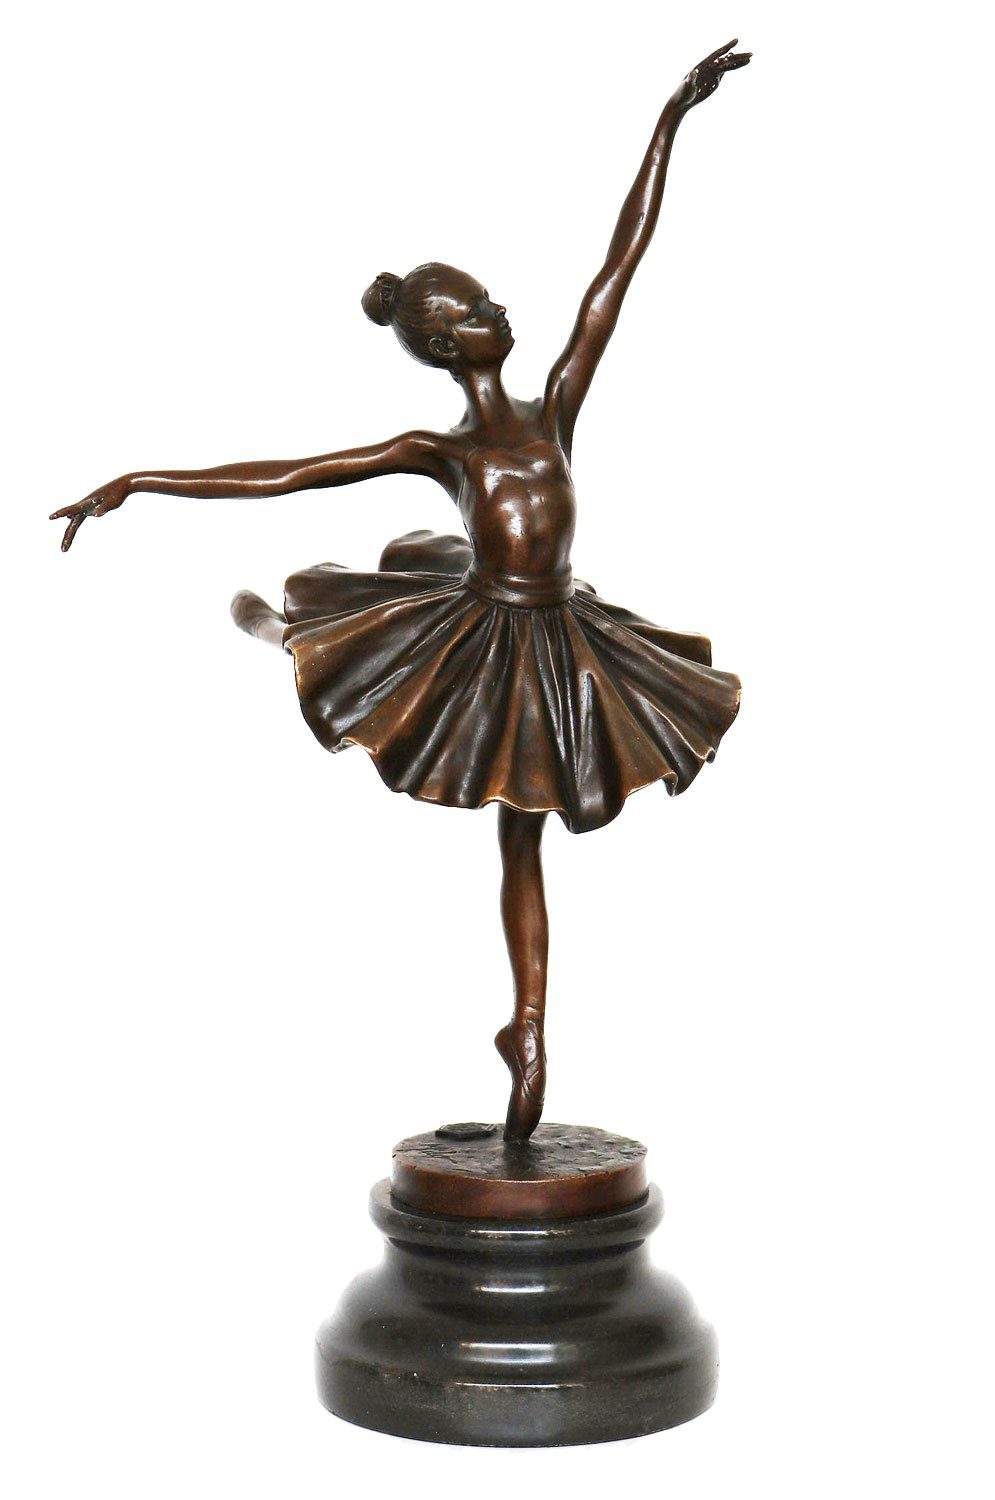 Aubaho Skulptur Bronzeskulptur Tänzerin Ballerina Repl Degas Bronze nach Ballett Figur